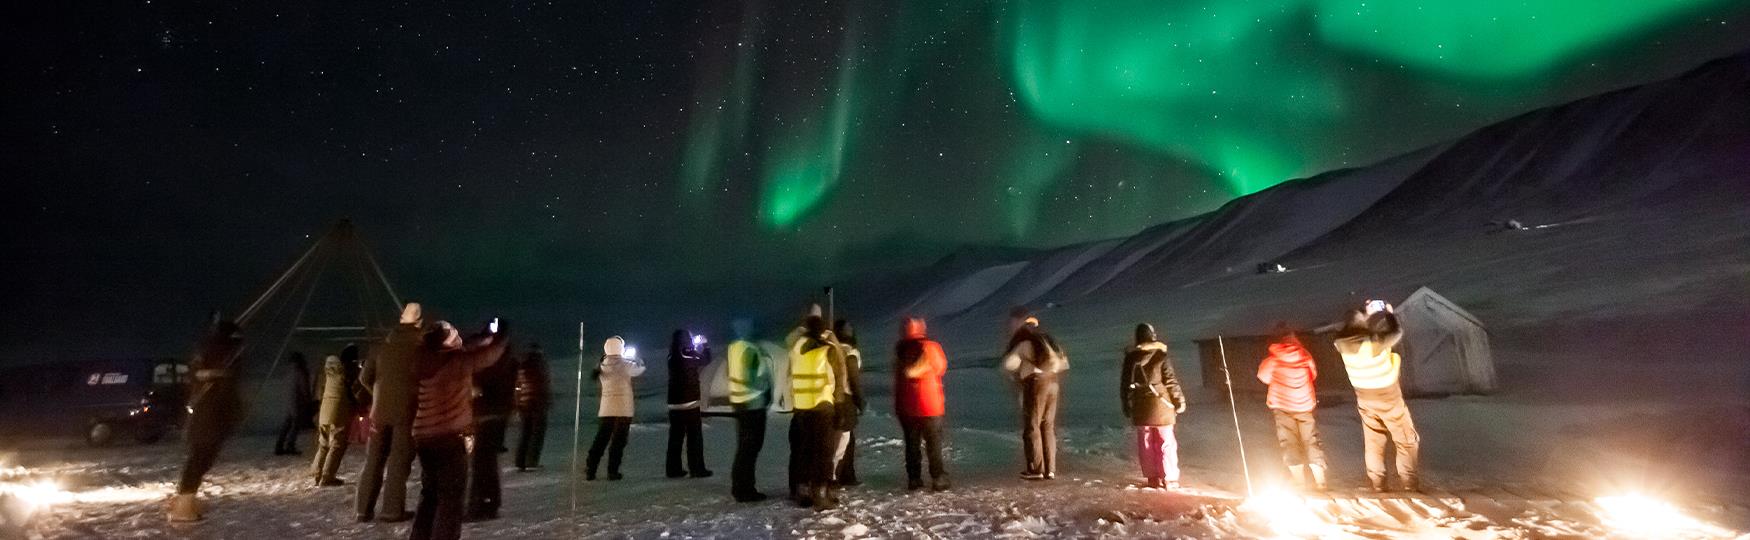 En gruppe med gjester som ser opp på nordlys på en mørk himmel